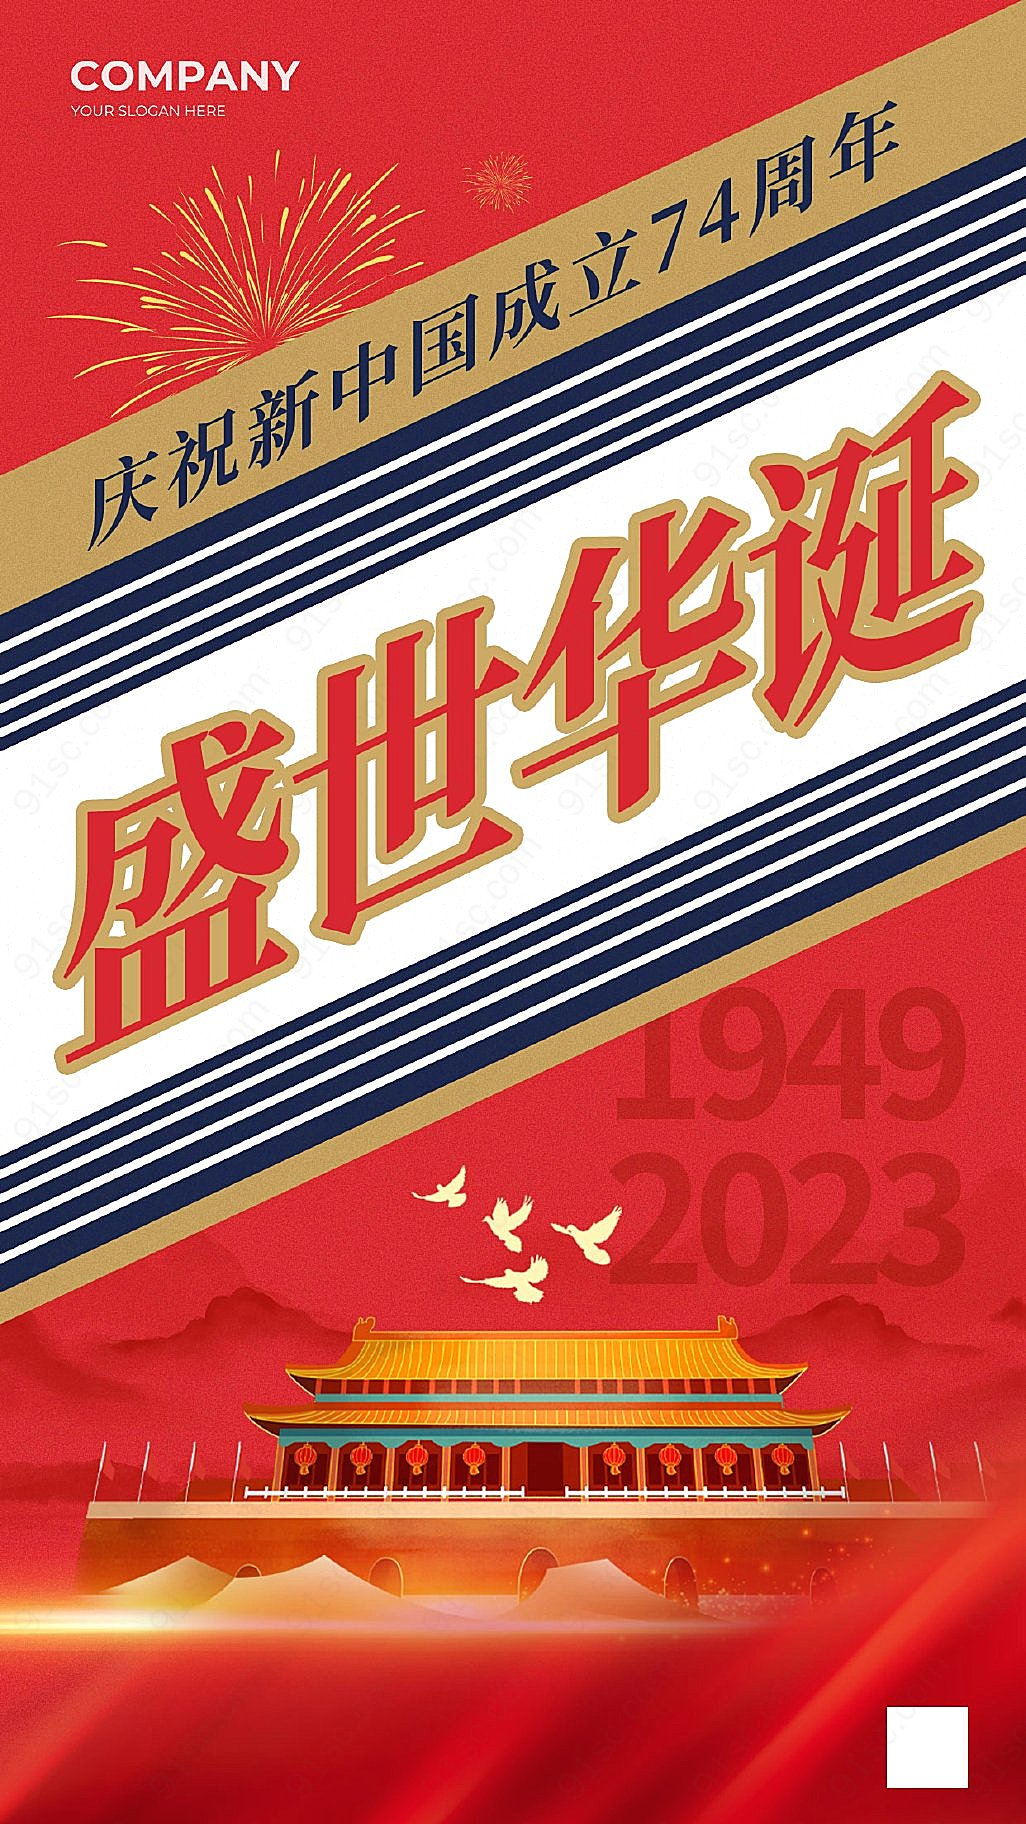 中秋国庆佳节茅台酱香手机宣传海报惊喜多多速来抢购新媒体用图下载